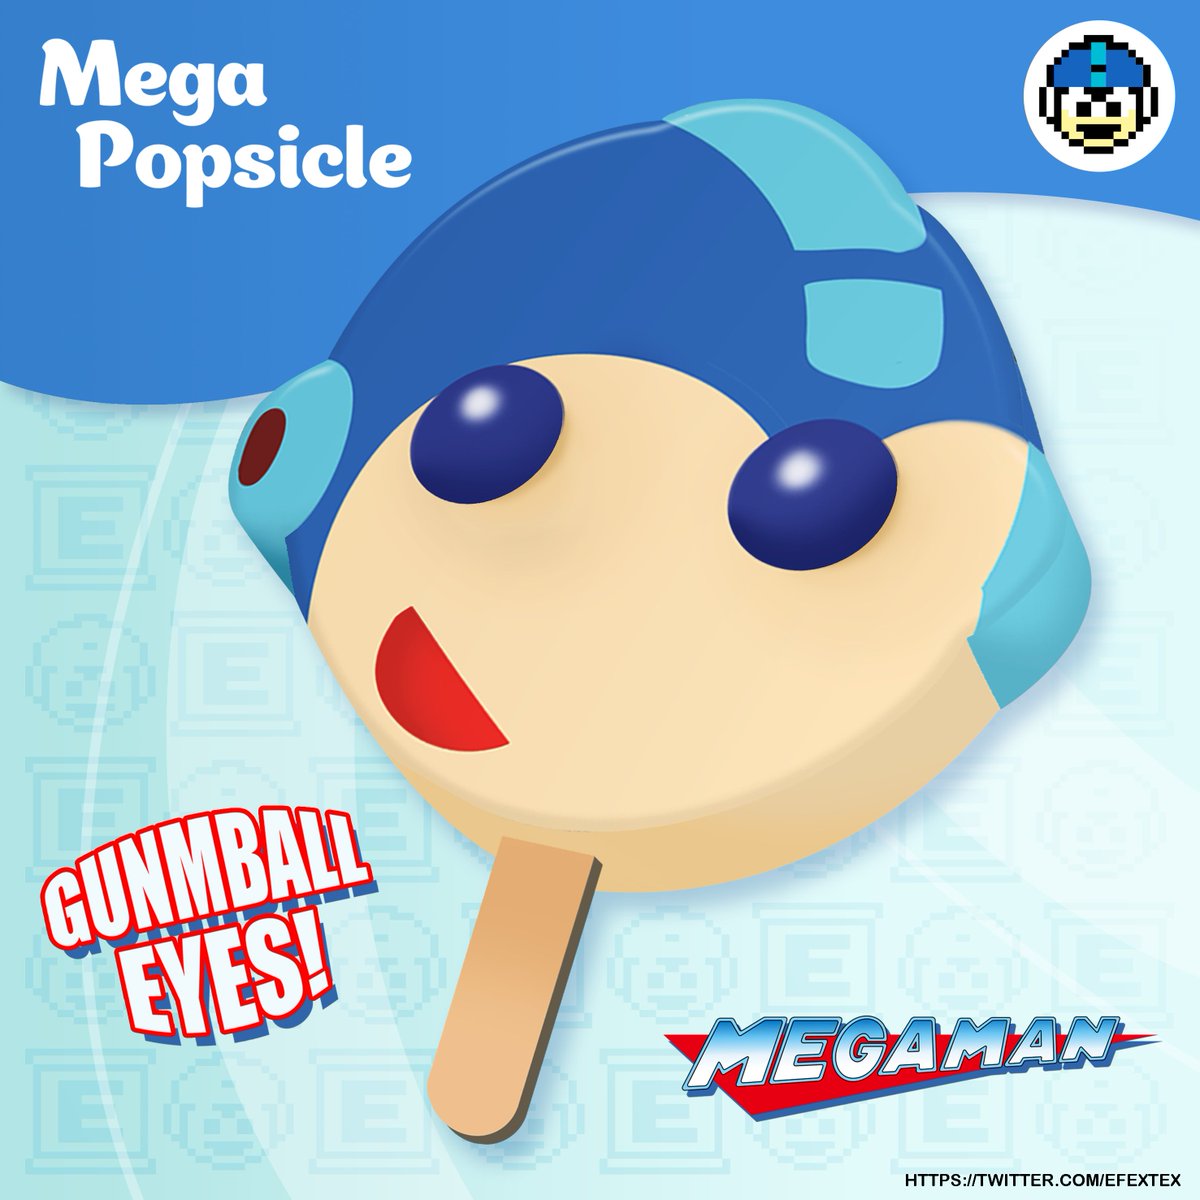 MEGA POPSICLE!! 
#Megaman